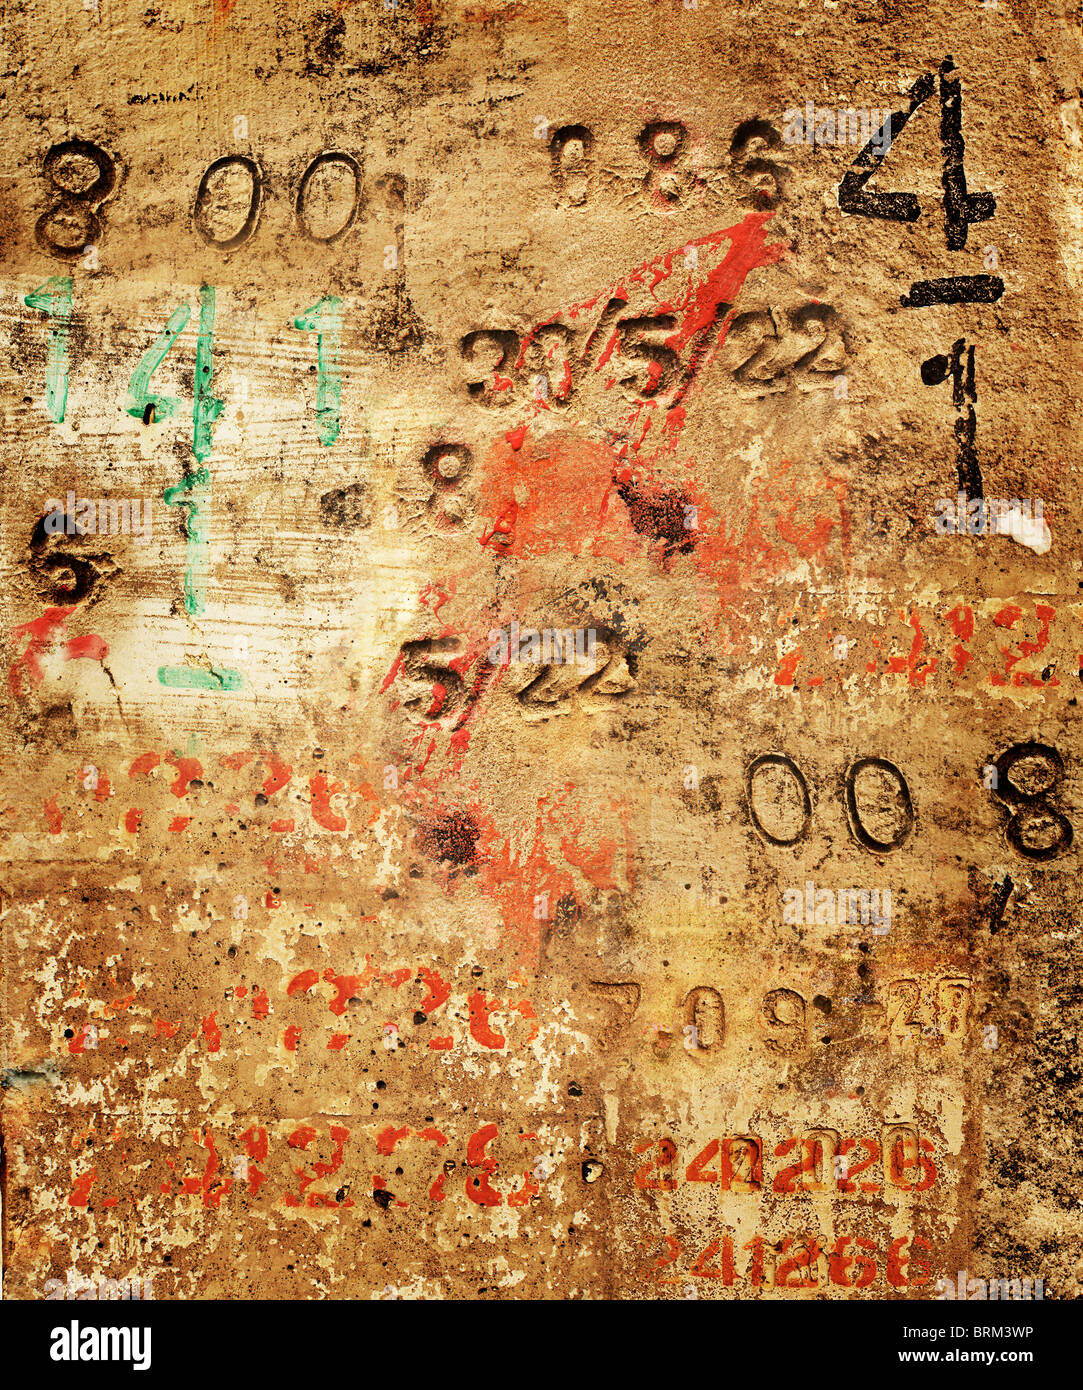 Grunge-Stil-Hintergrund von Zufallszahlen auf eine Betonoberfläche Stockfoto